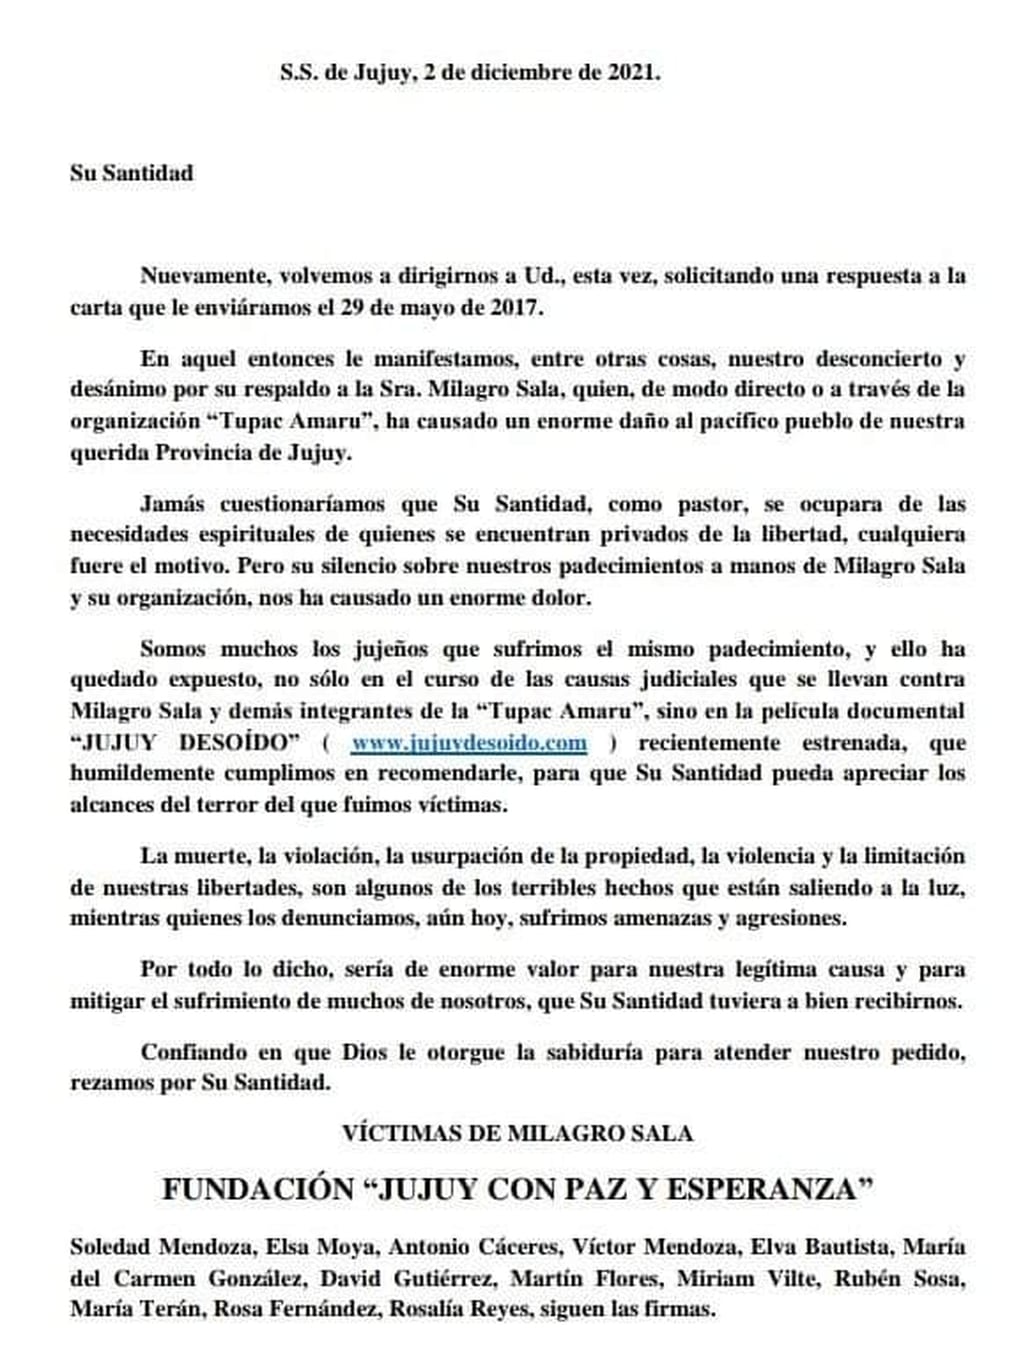 La carta dirigida al papa Francisco, remitida por la fundación "Jujuy con Paz y Esperanza" de las víctimas de Milagro Sala.